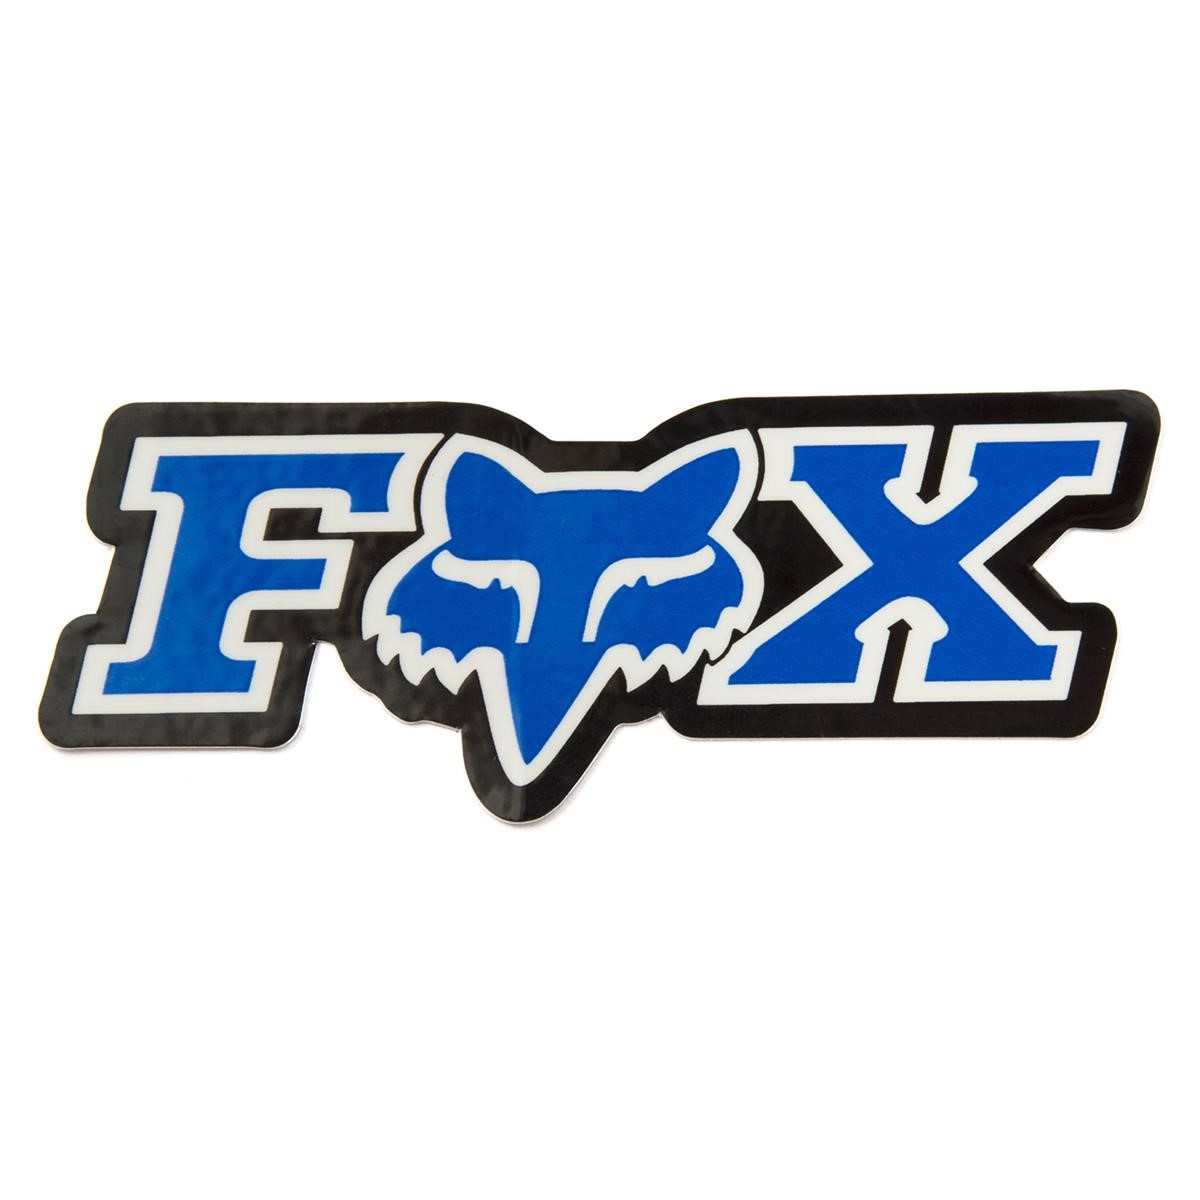 Fox Adesivi Corporate Blue - 7.5 cm